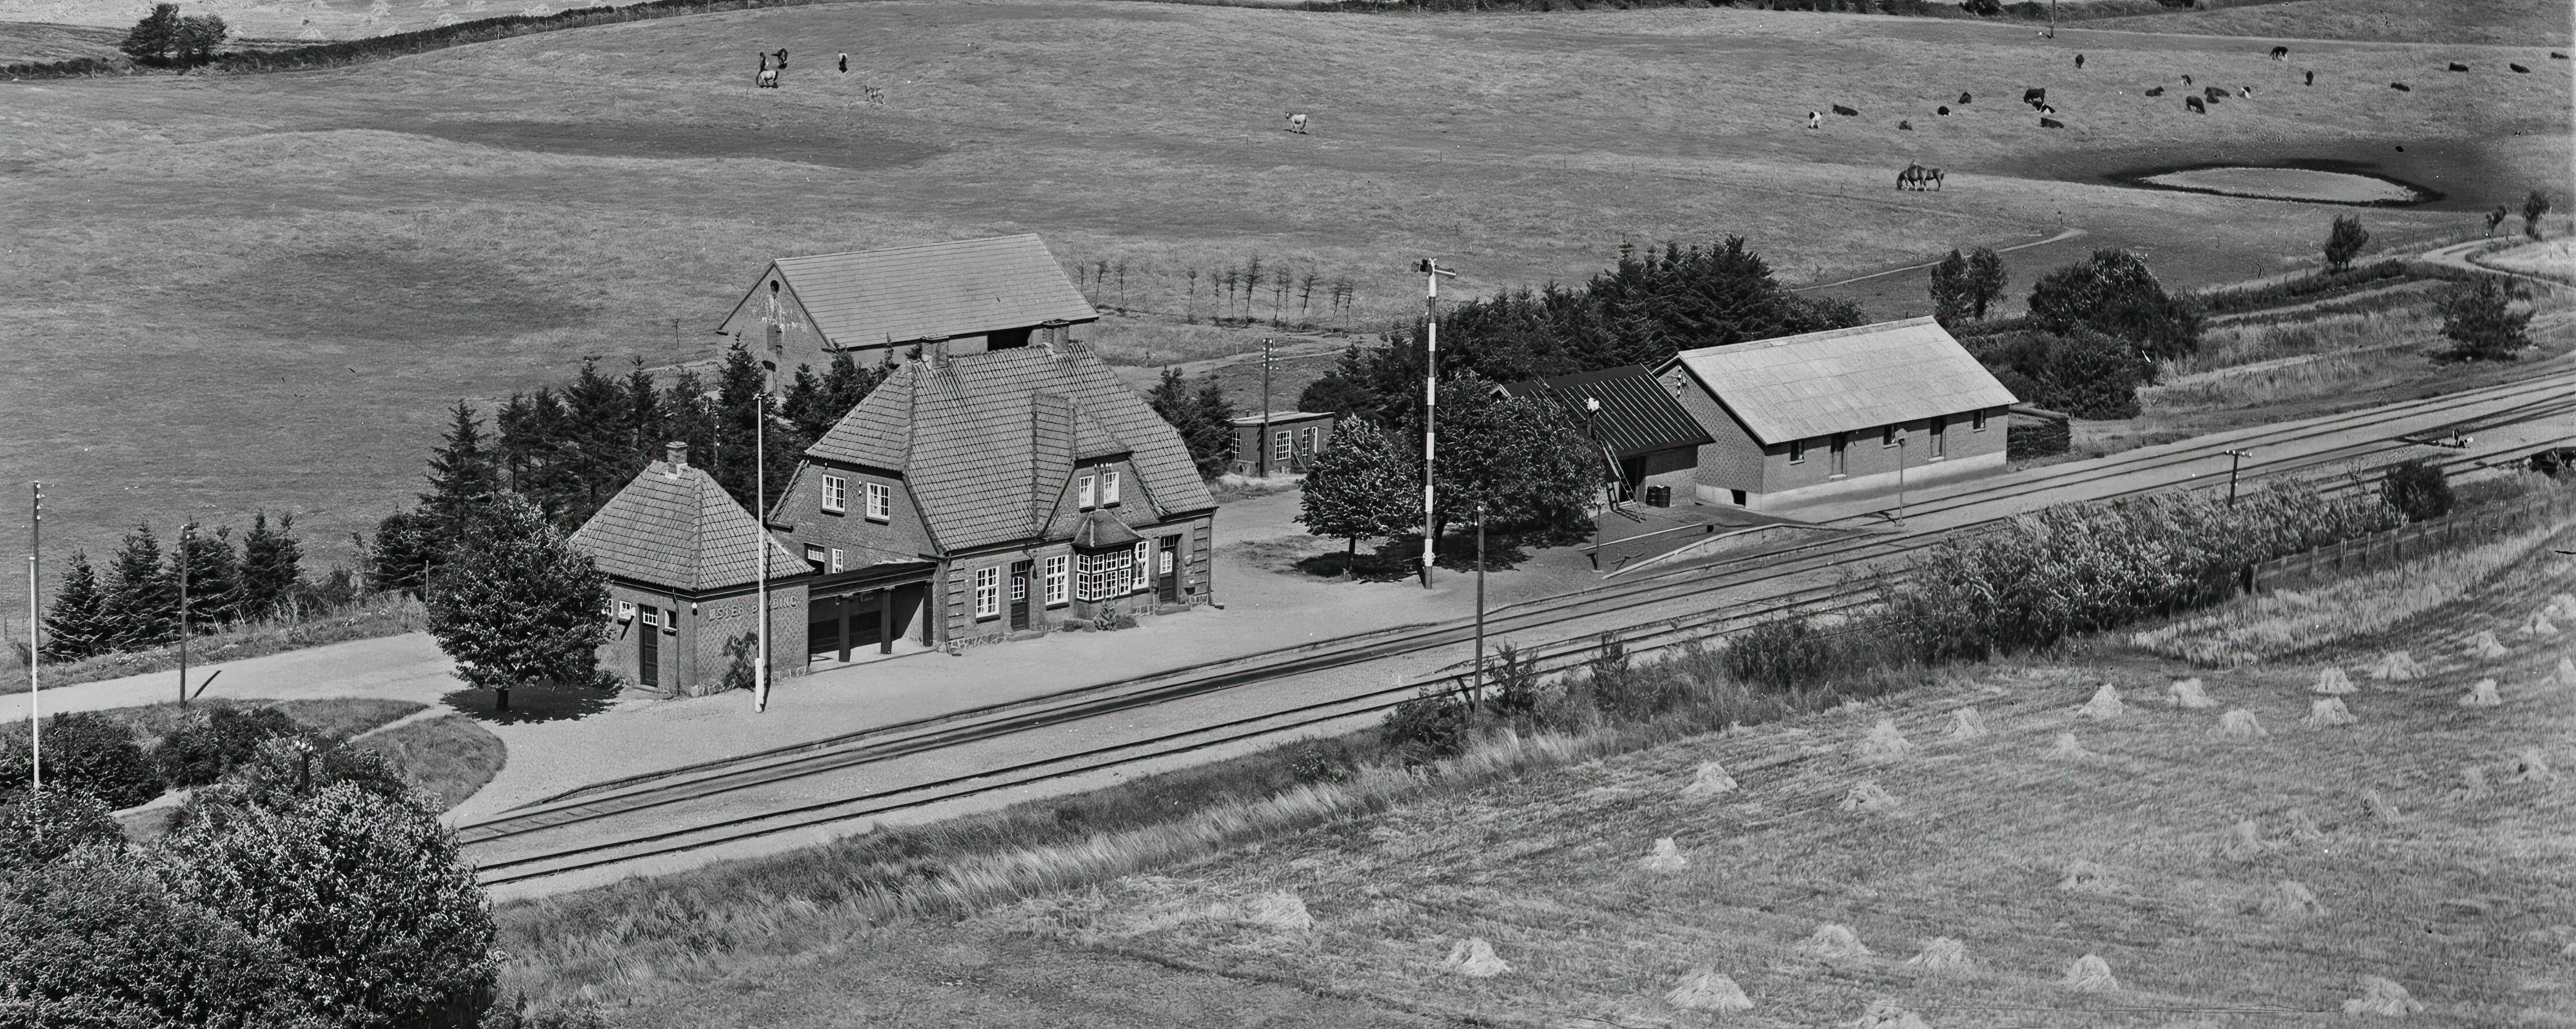 Billede af Øster Bording Station.